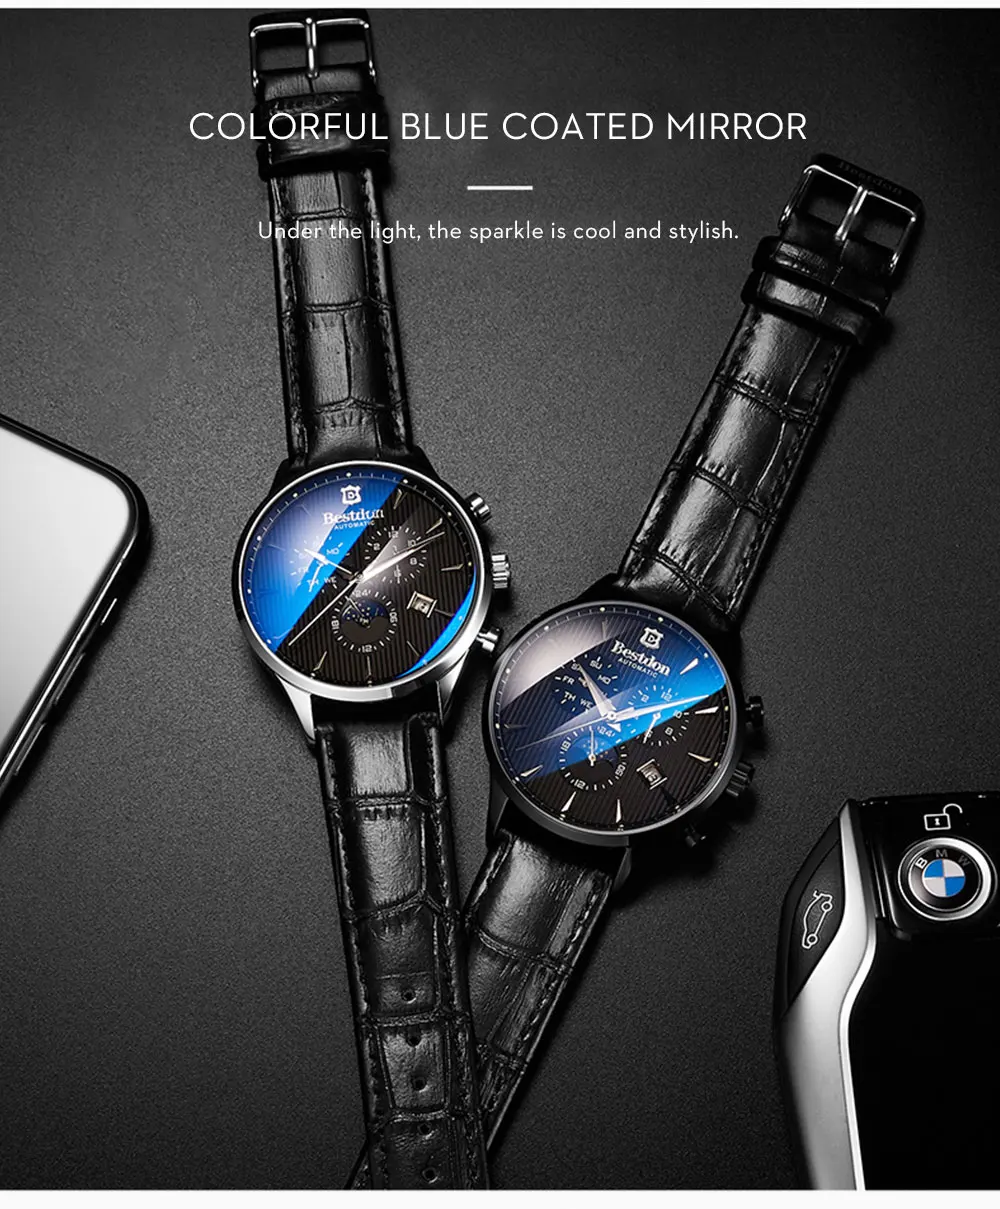 Bestdon Роскошные Брендовые Часы Мужские автоматические механические часы деловые повседневные швейцарские часы Moon Phase Синий кожаный ремешок 7116